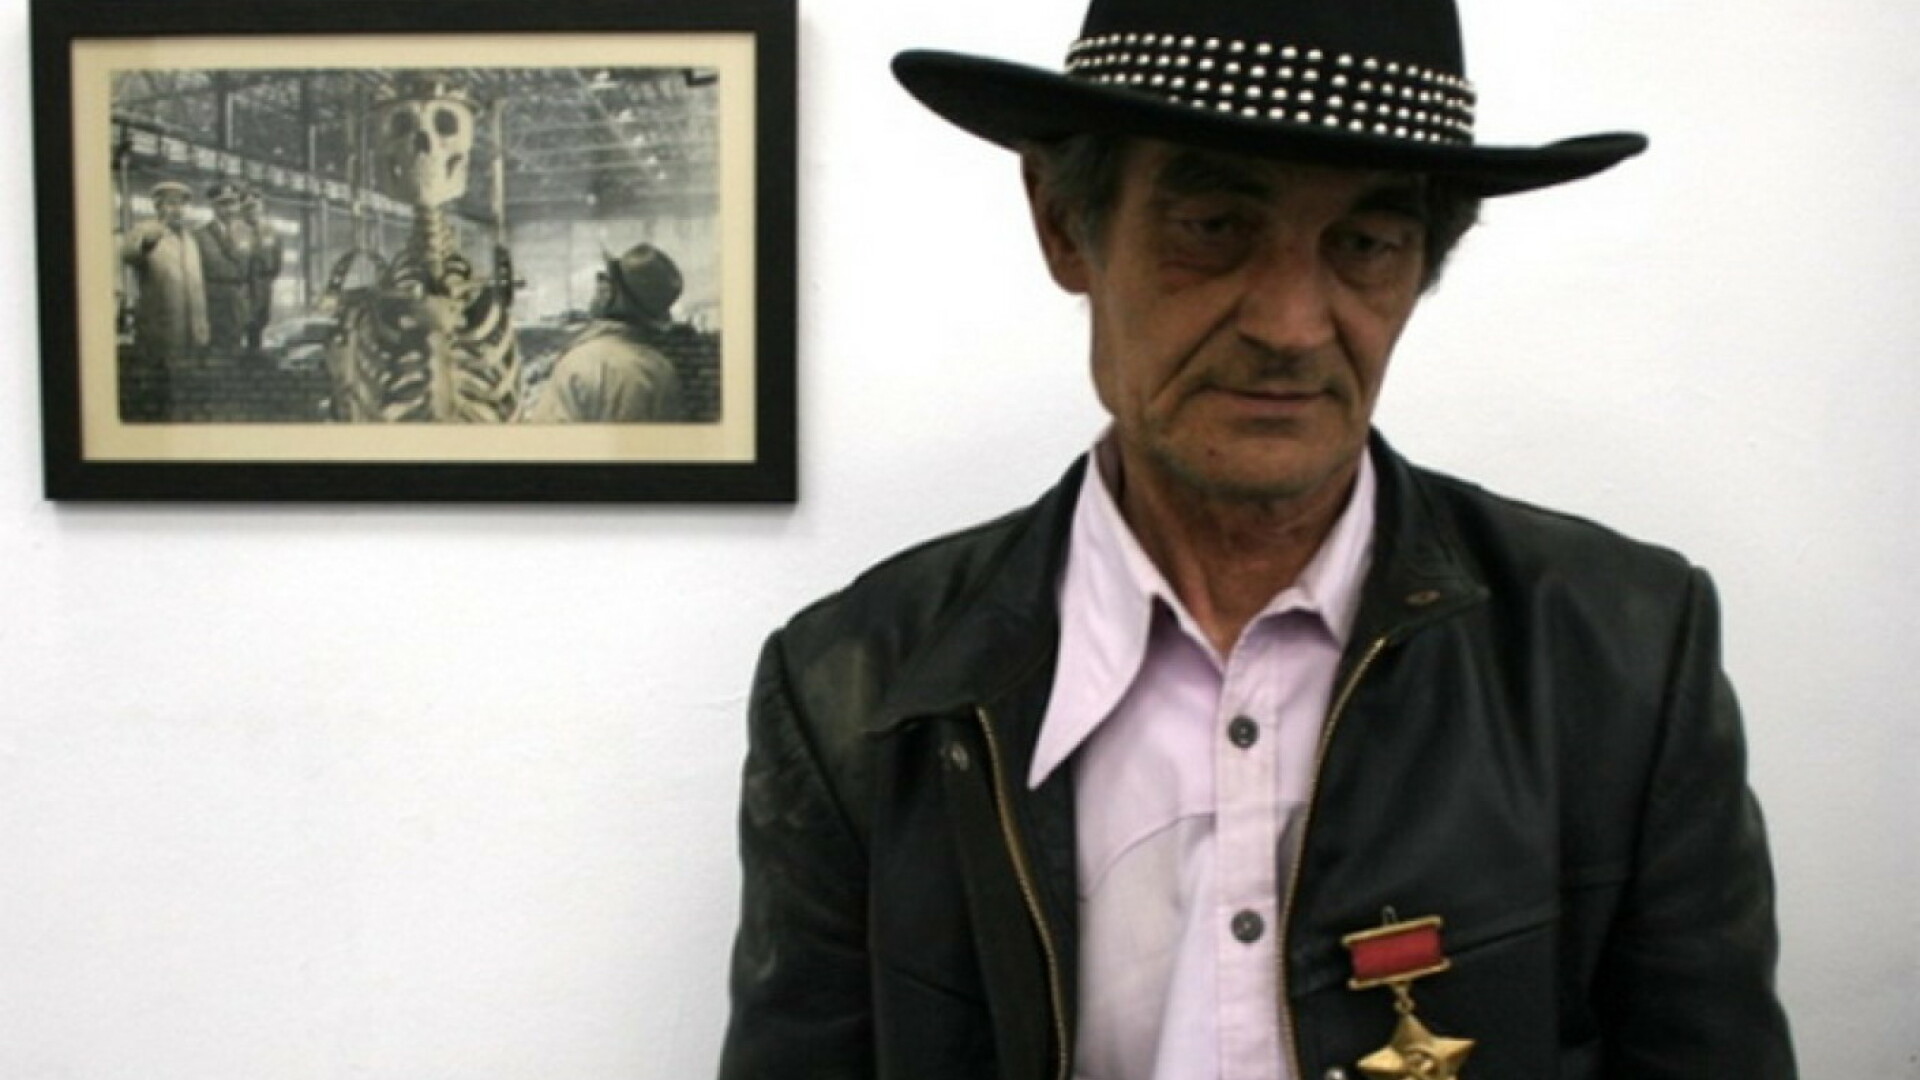 A murit artistul Ion Bârlădeanu, cunoscut pentru colajele pop art. ”Credeam că voi fi nemuritor”